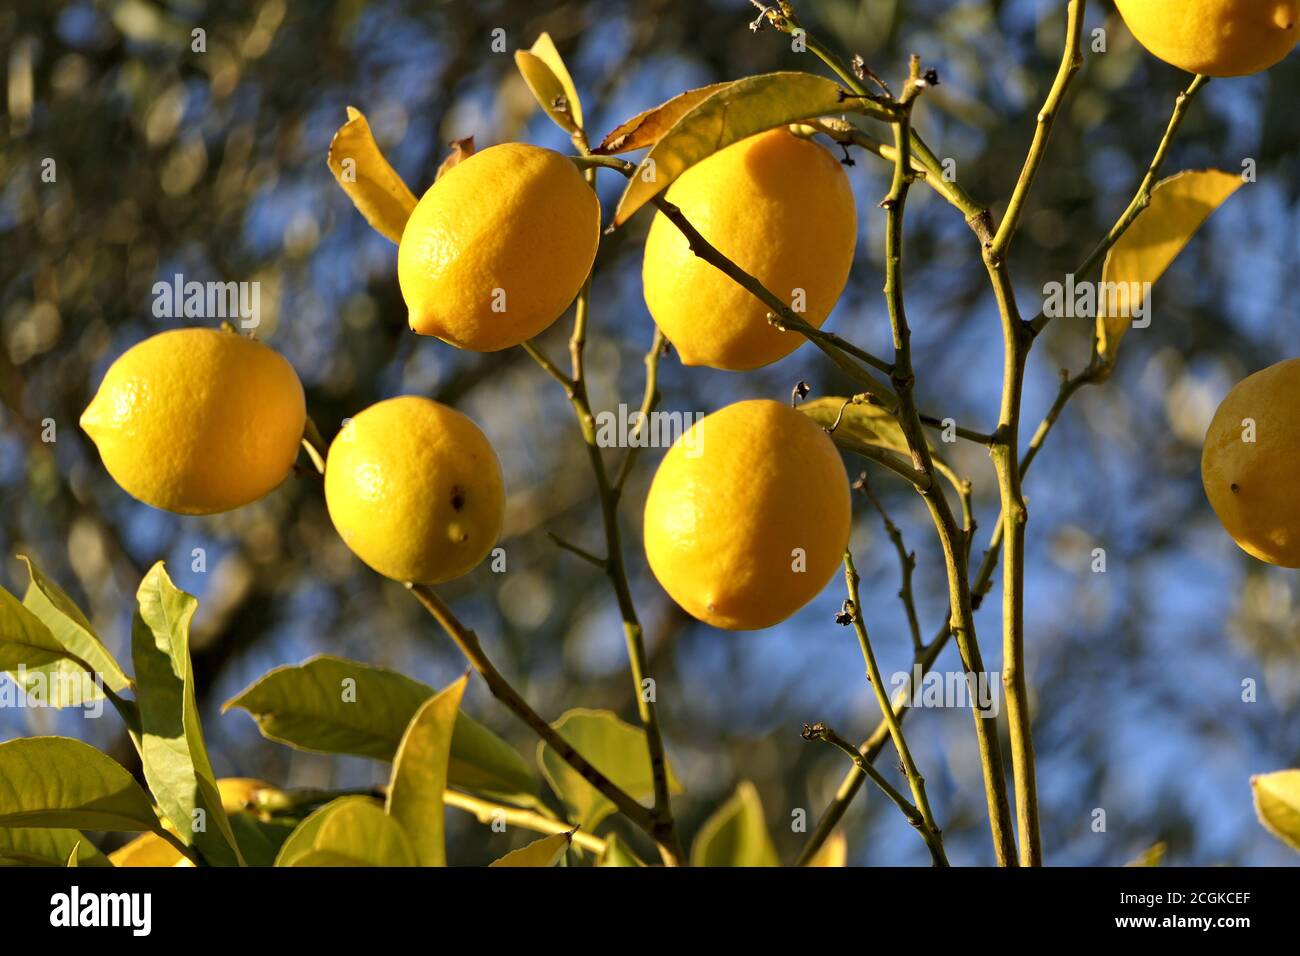 Closeup growing lemons on a lemon tree in a garden in sunlight Stock Photo